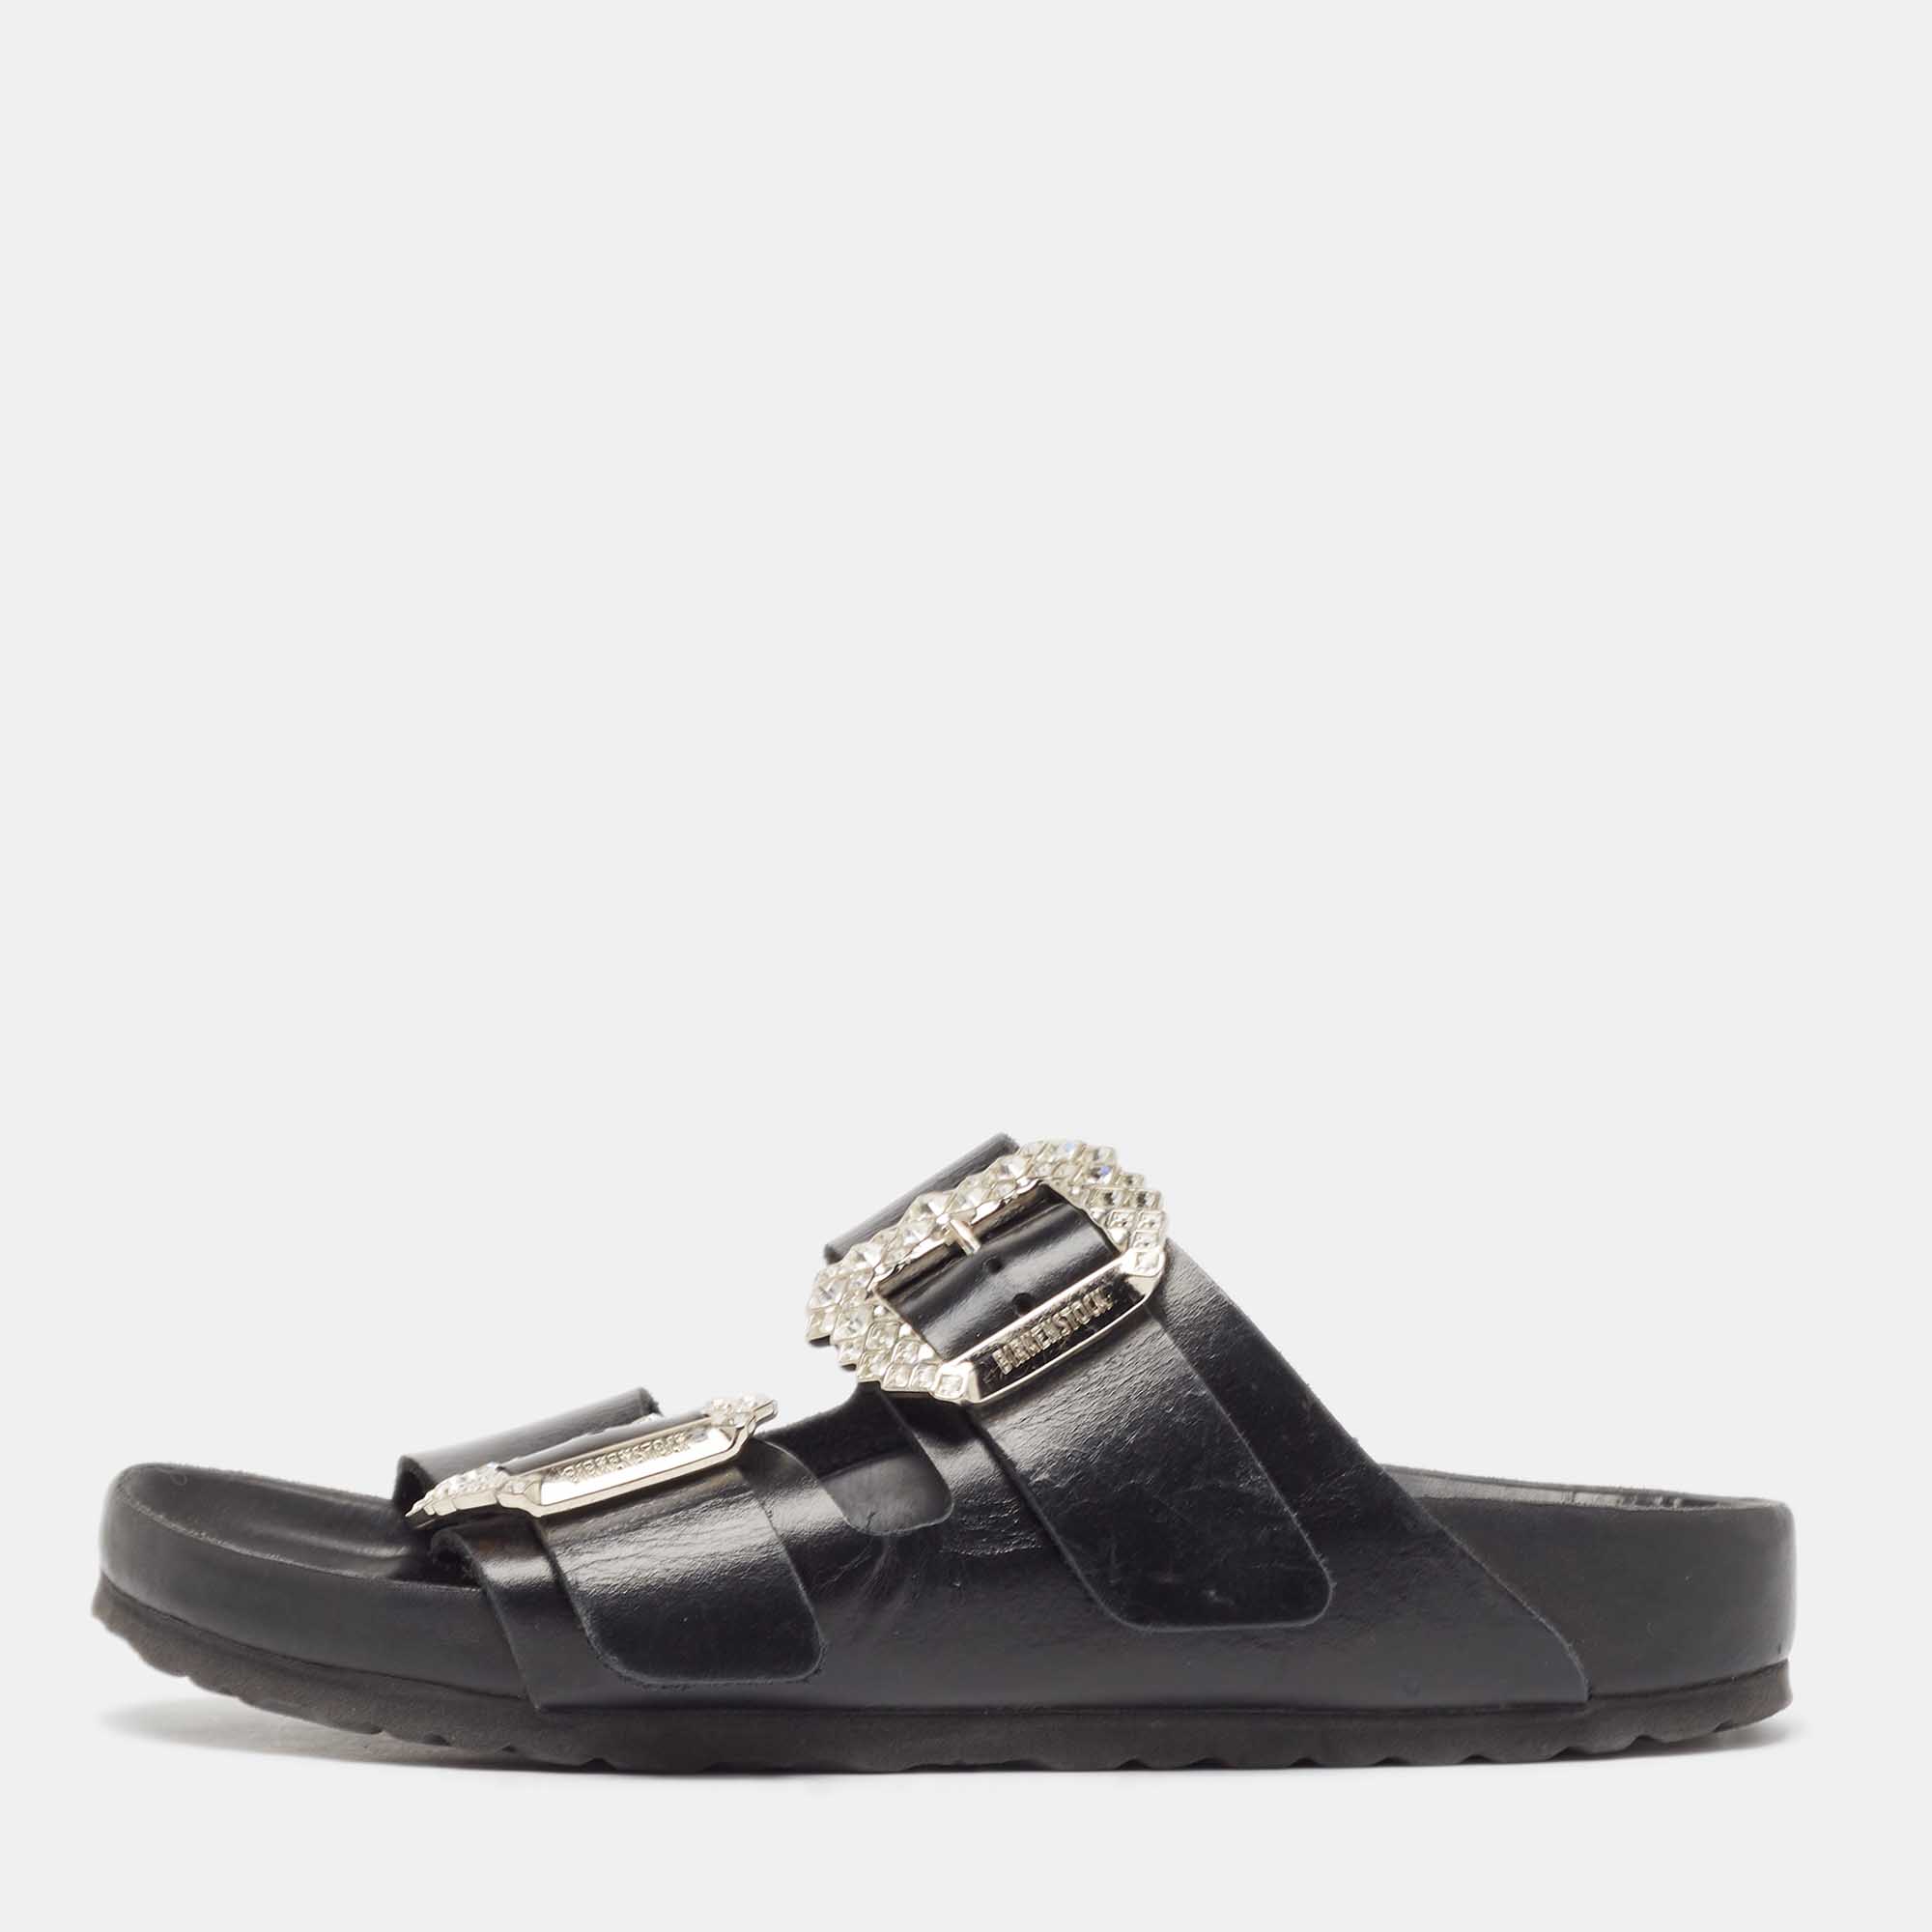 Manolo blahnik black leather crystal embellished buckle flat sandals size 38